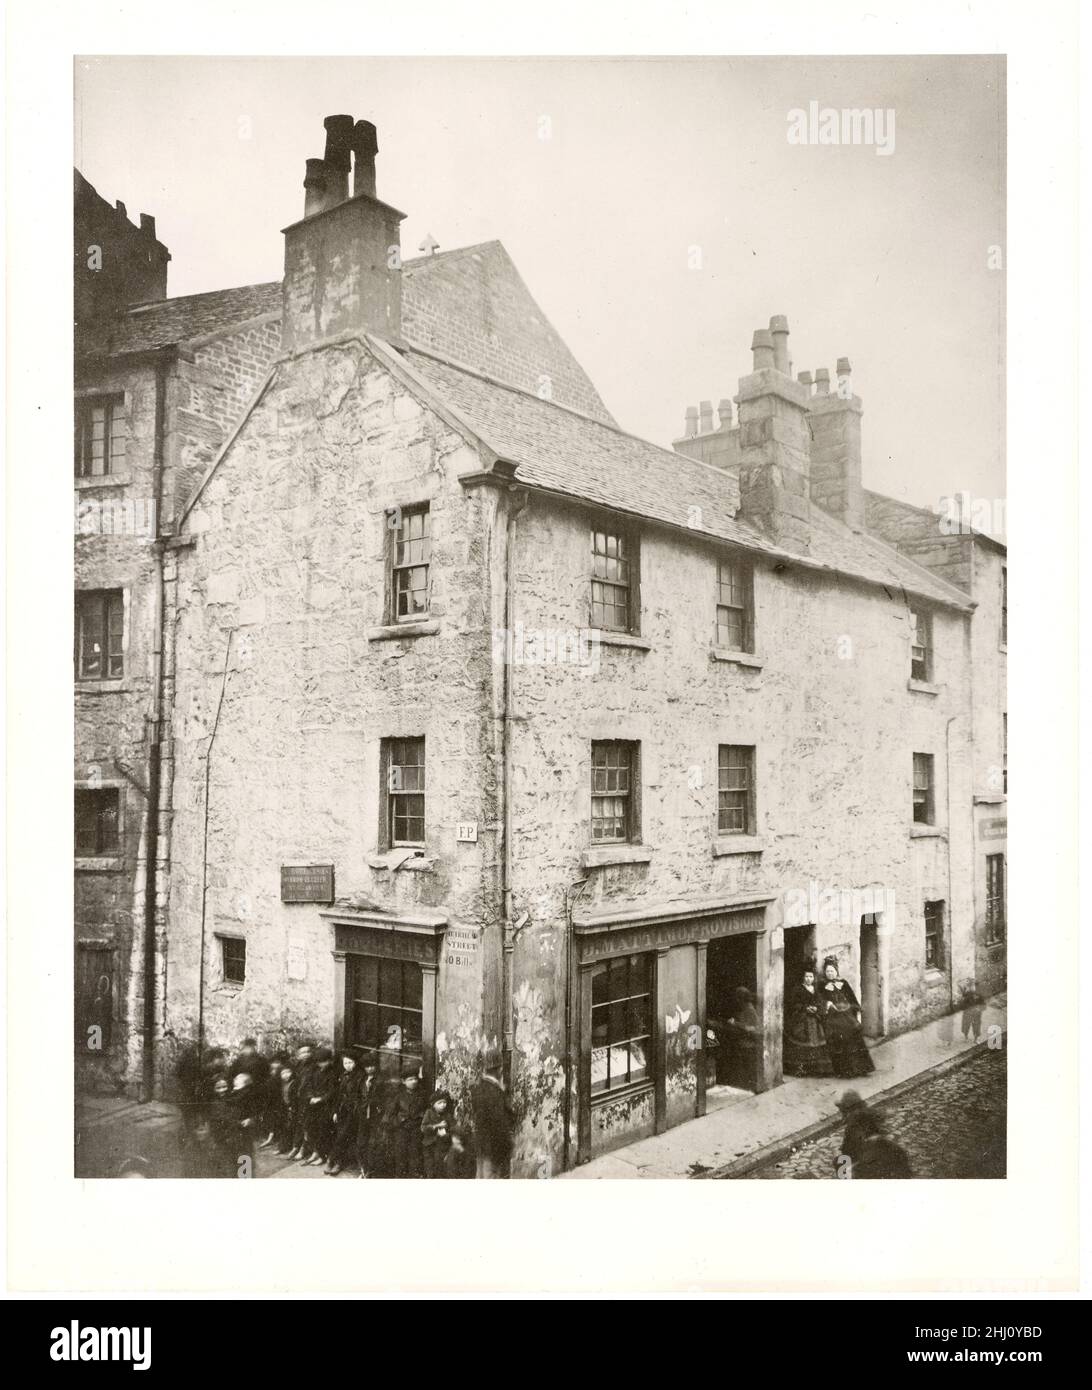 Geburtsort von Allan Pinkerton, Muirhead Street und Ruglen Loan, Gorbals, Glasgow, Schottland - 1850 Stockfoto